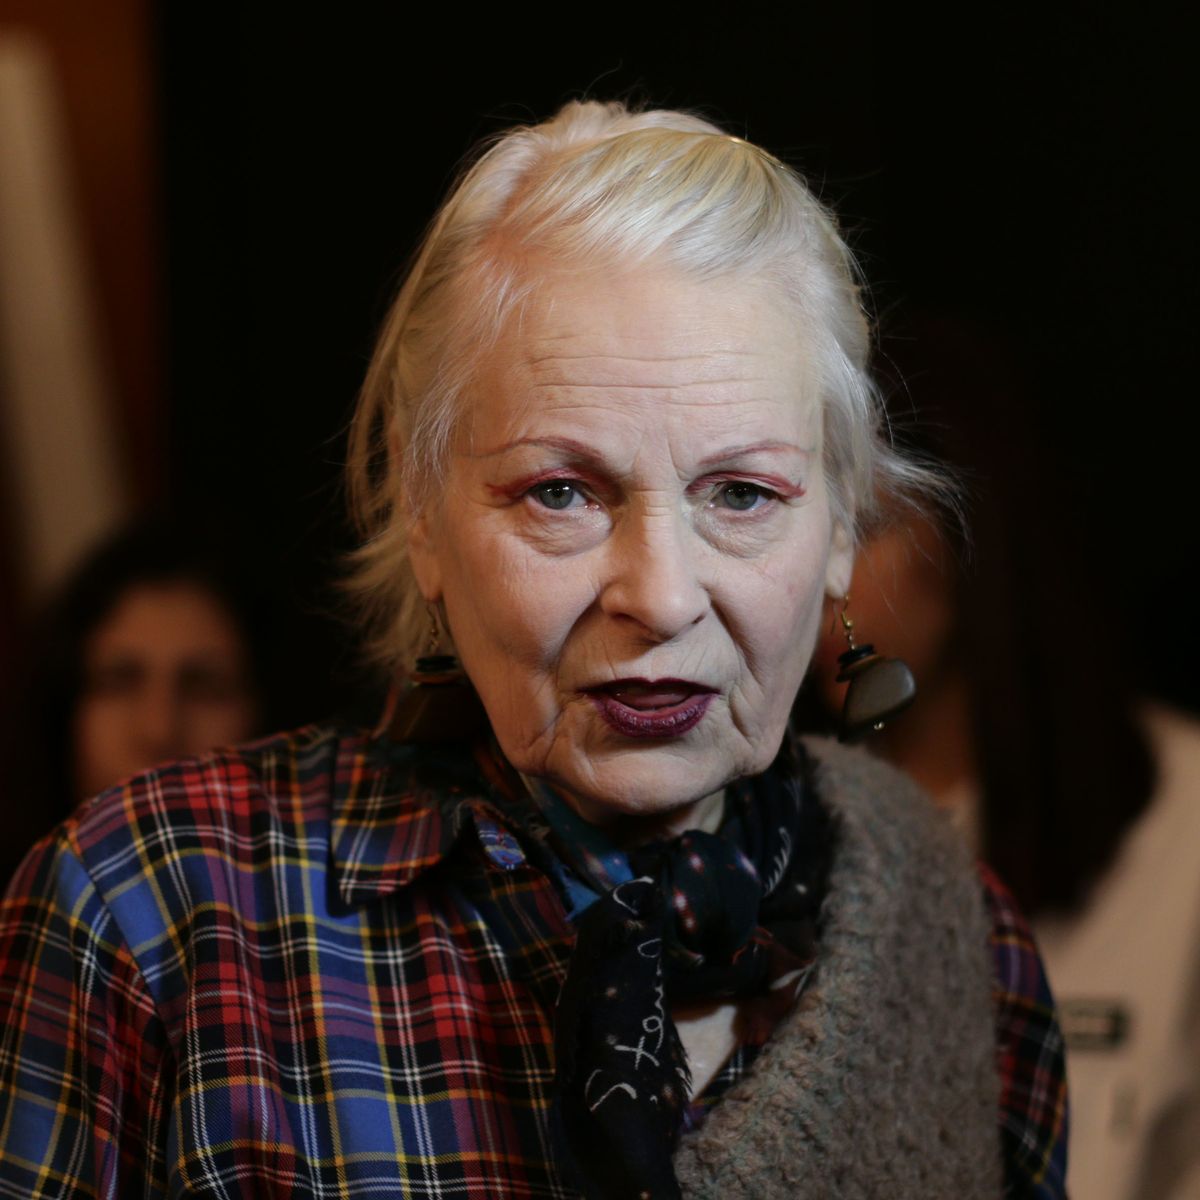 Fashion designer, Vivienne Westwood dies at 81